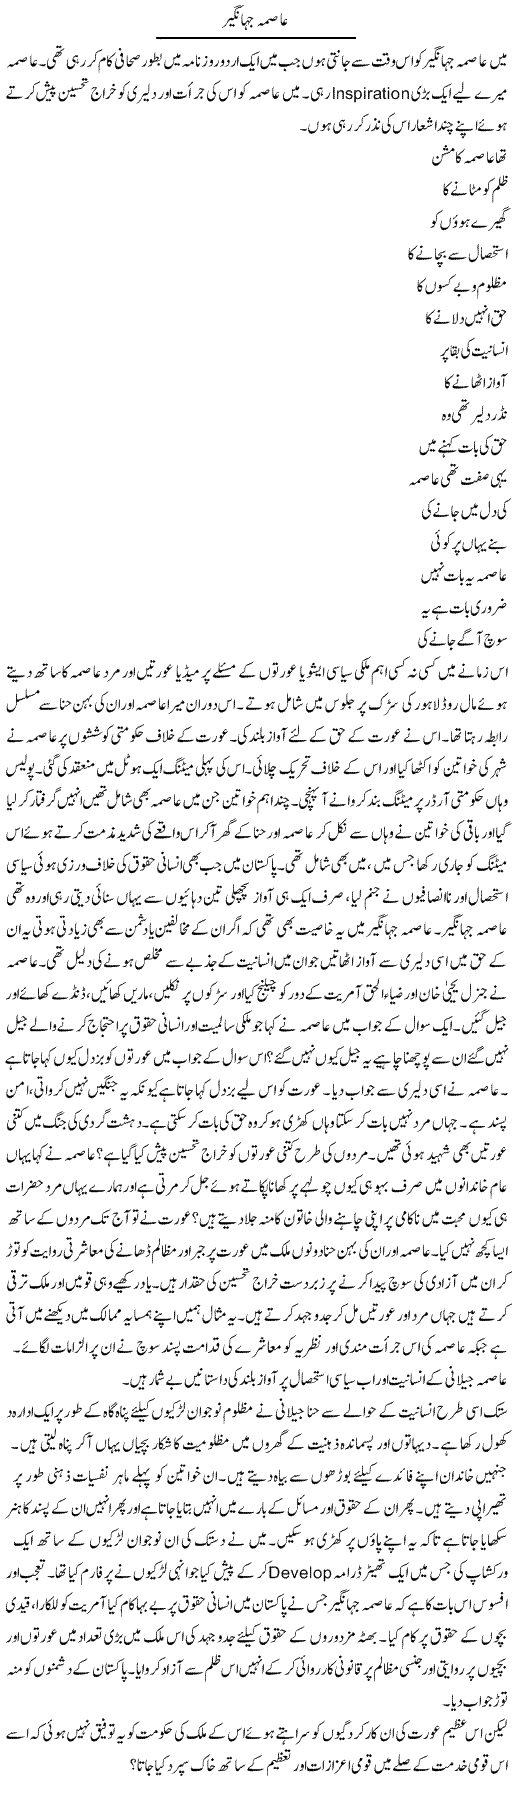 Asma Jahangir | Tasneem Peer Zada | Daily Urdu Columns